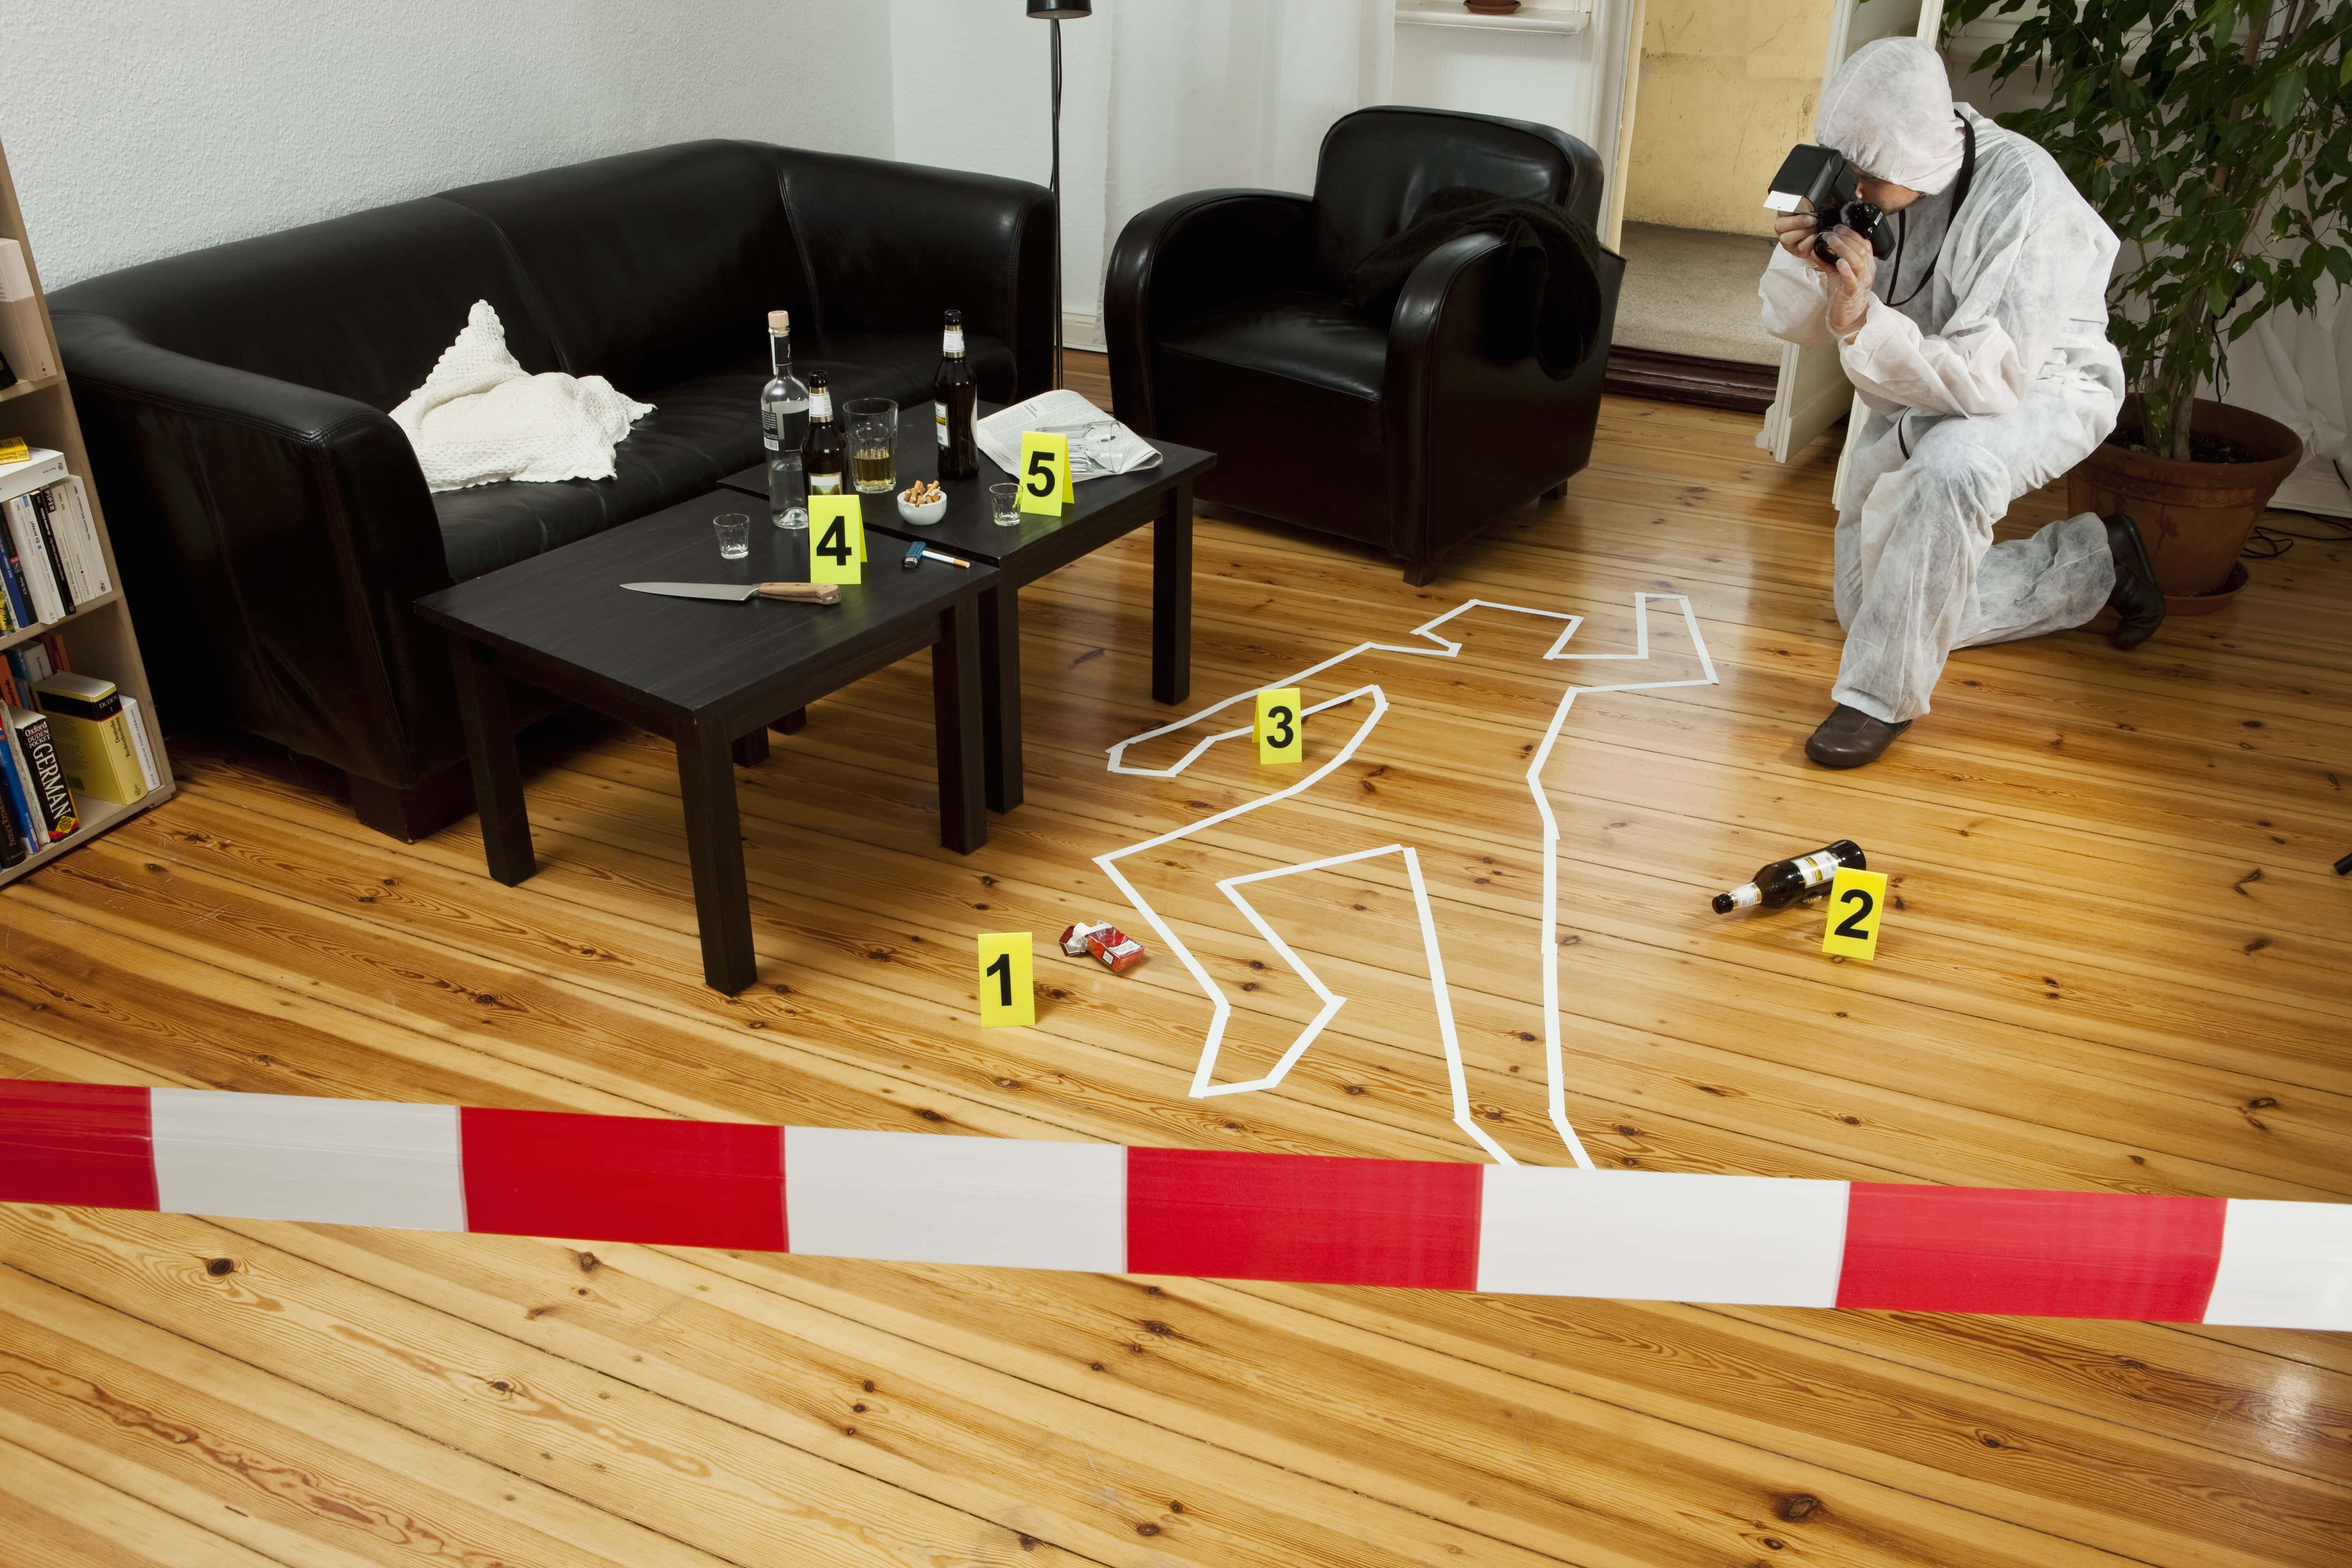 Crime scene investigation